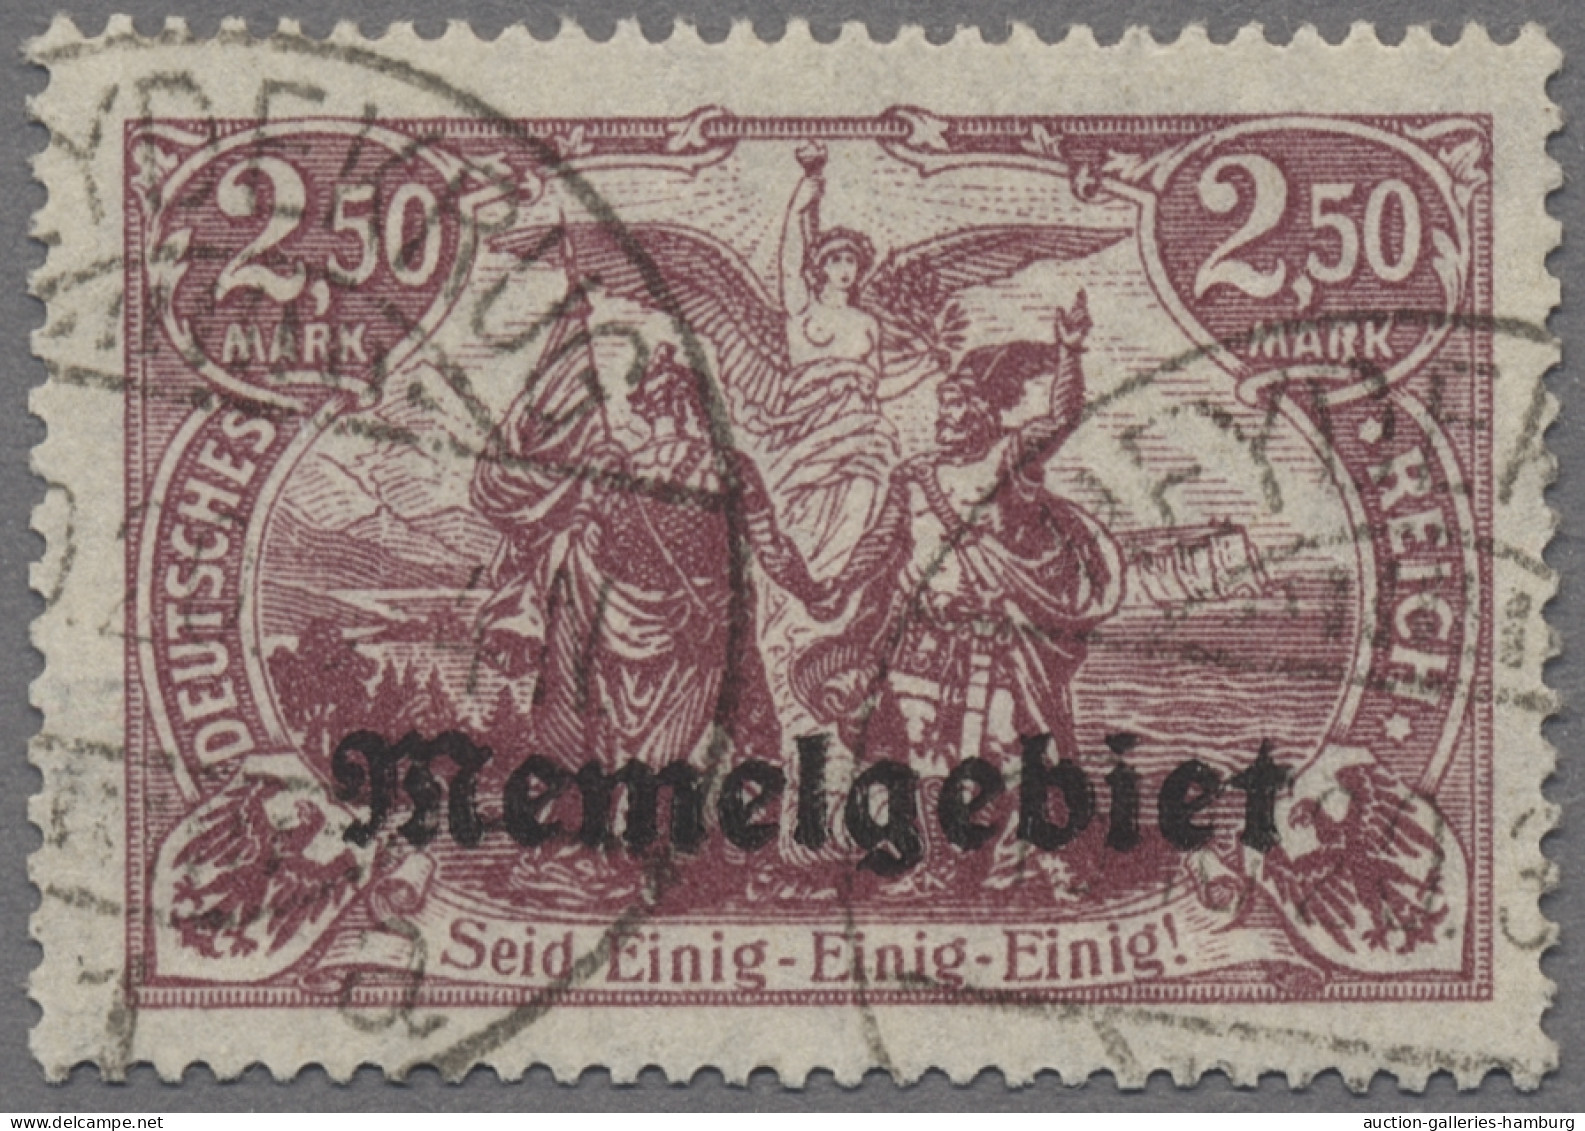 Memel: 1920, Freimarke 2,50 Mark In Der Farbvariante Dunkelbräunlichlila, Entwer - Klaipeda 1923